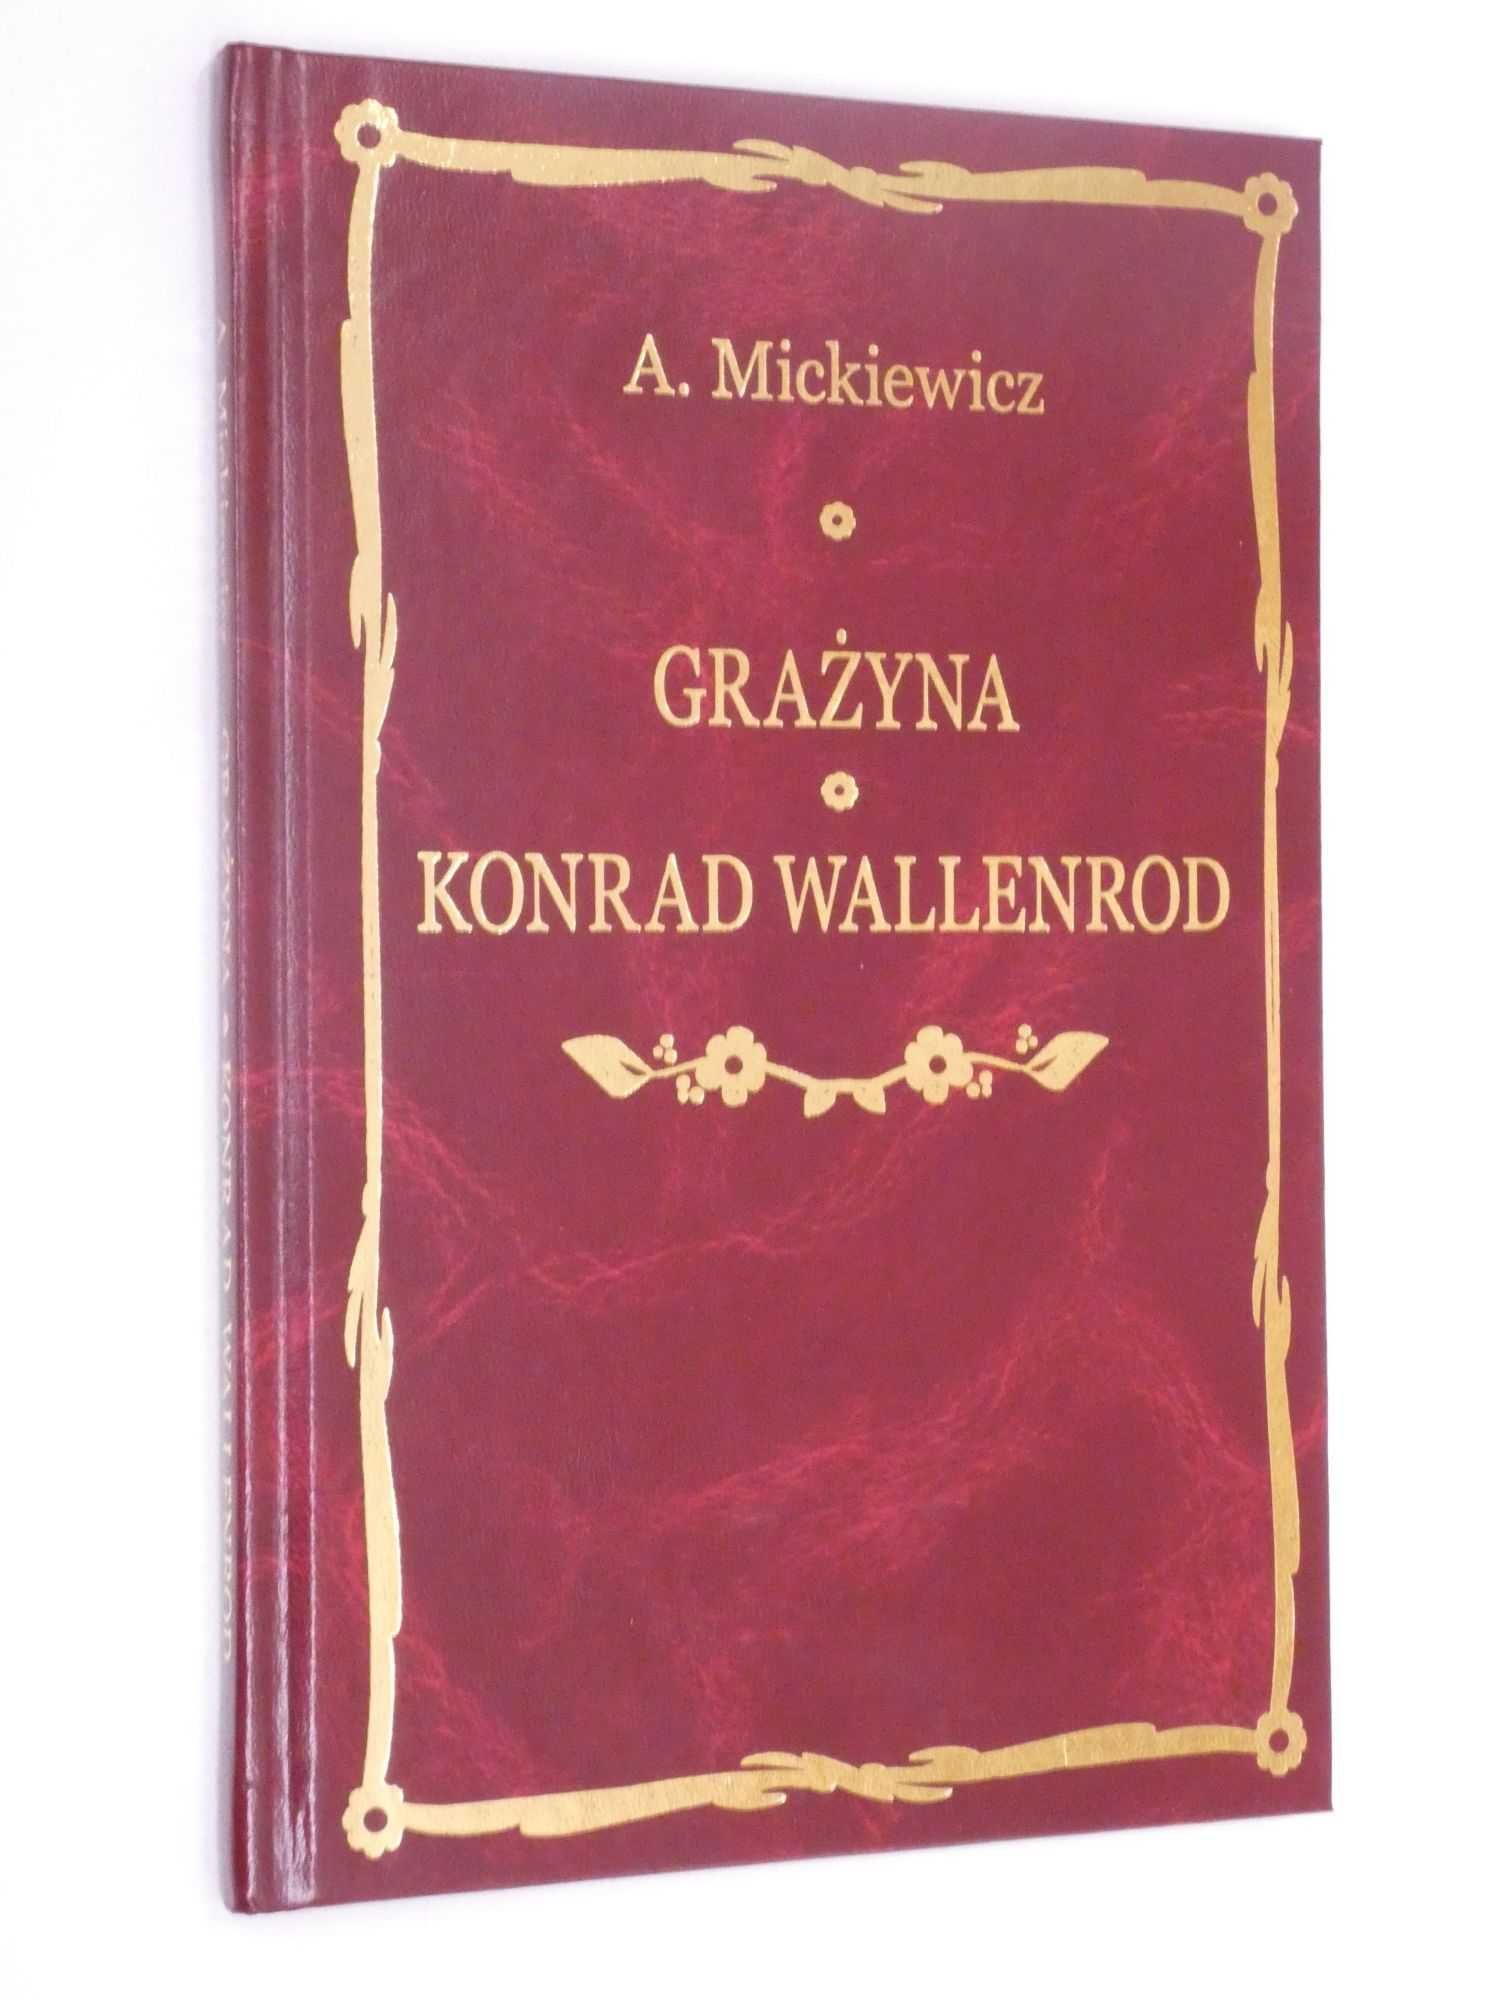 Grażyna Konrad Wallenrod Mickiewicz